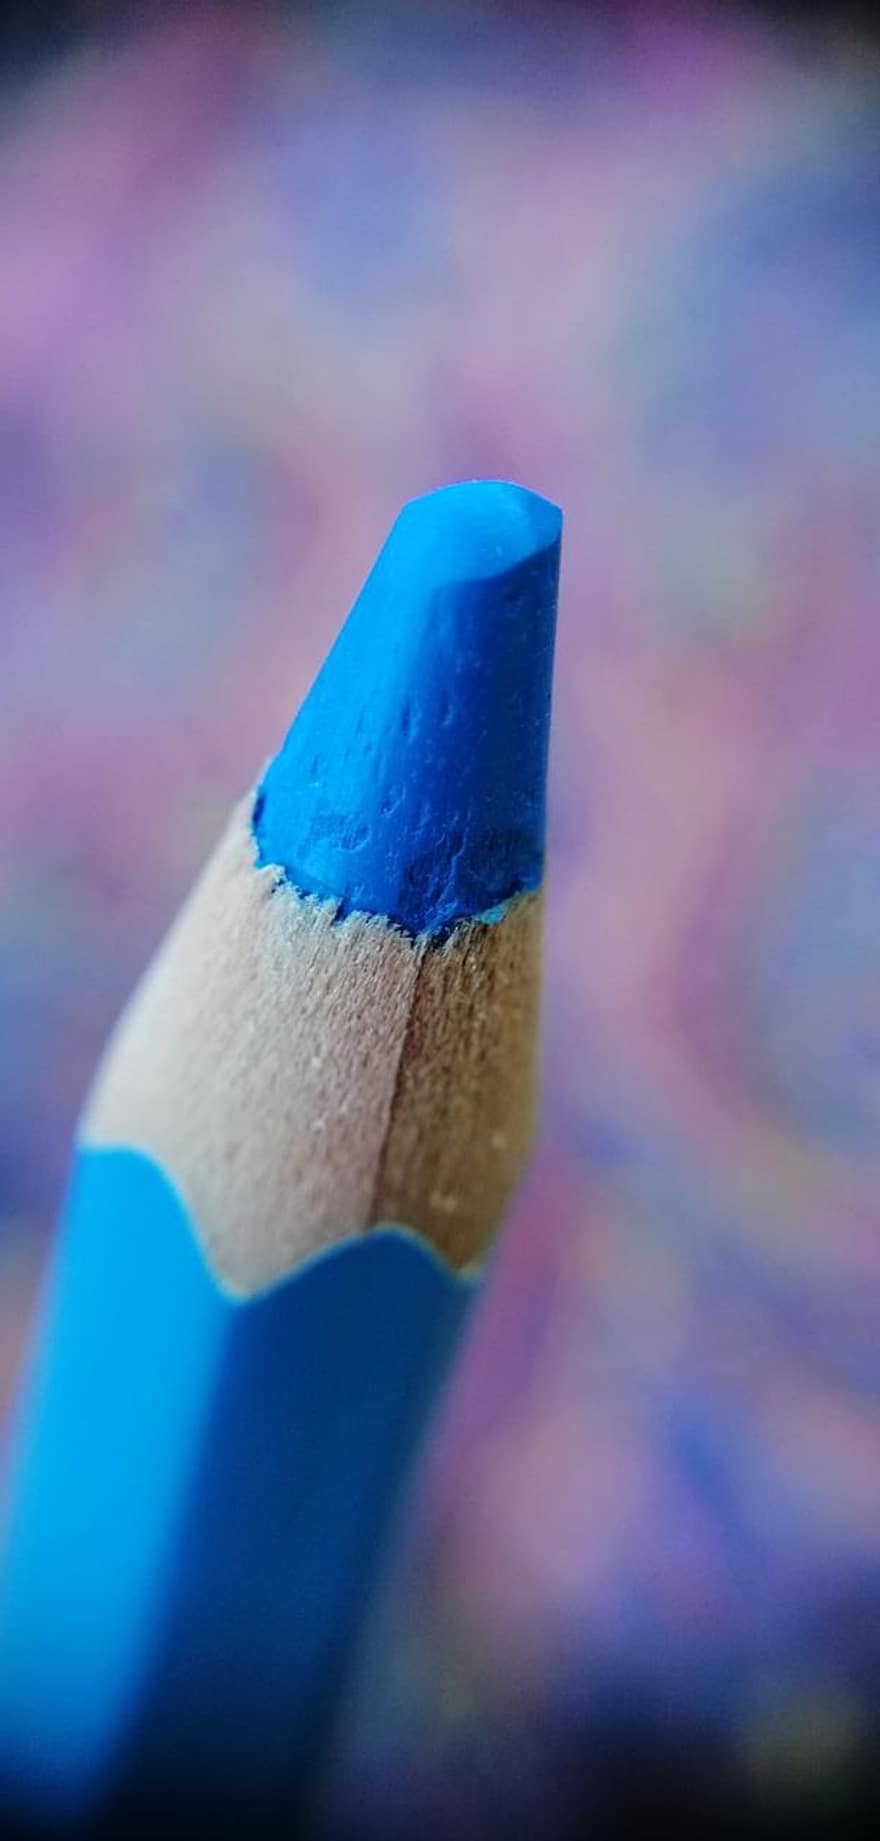 kleurpotlood, blauwe pen, blauw kleurenpotlood, blauw, kunst en ambachten, kunstbenodigdheden, kleur materiaal, kleur, macrofotografie, bokeh